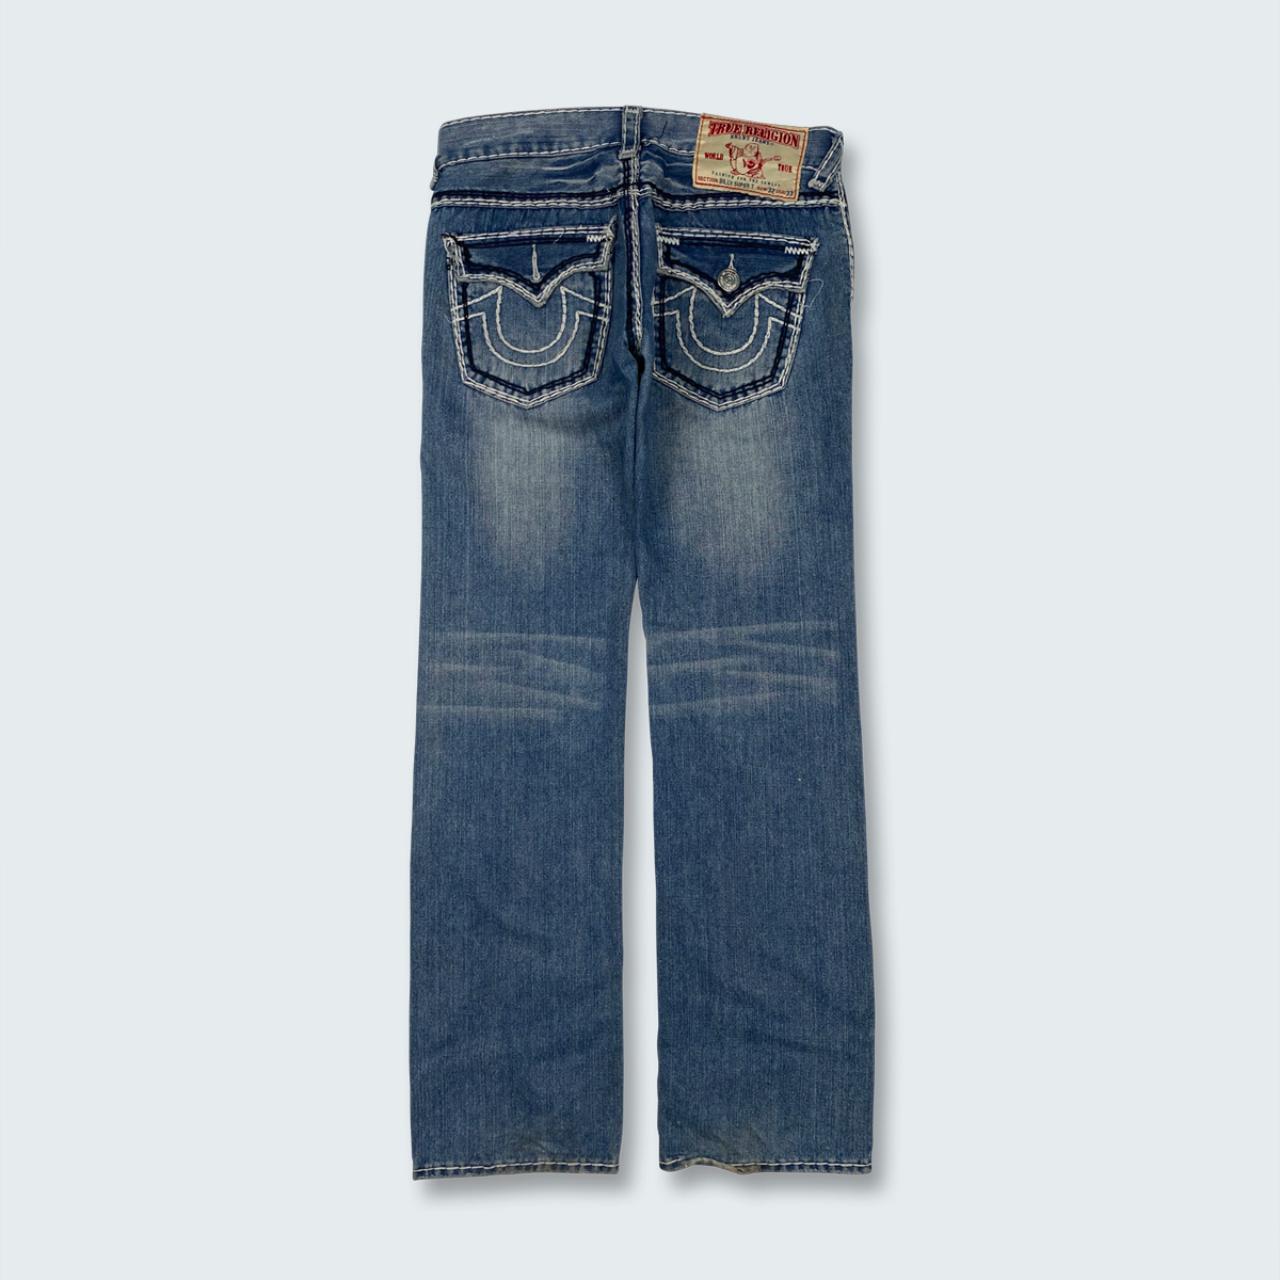 Authentic Vintage True Religion Jeans  (32")